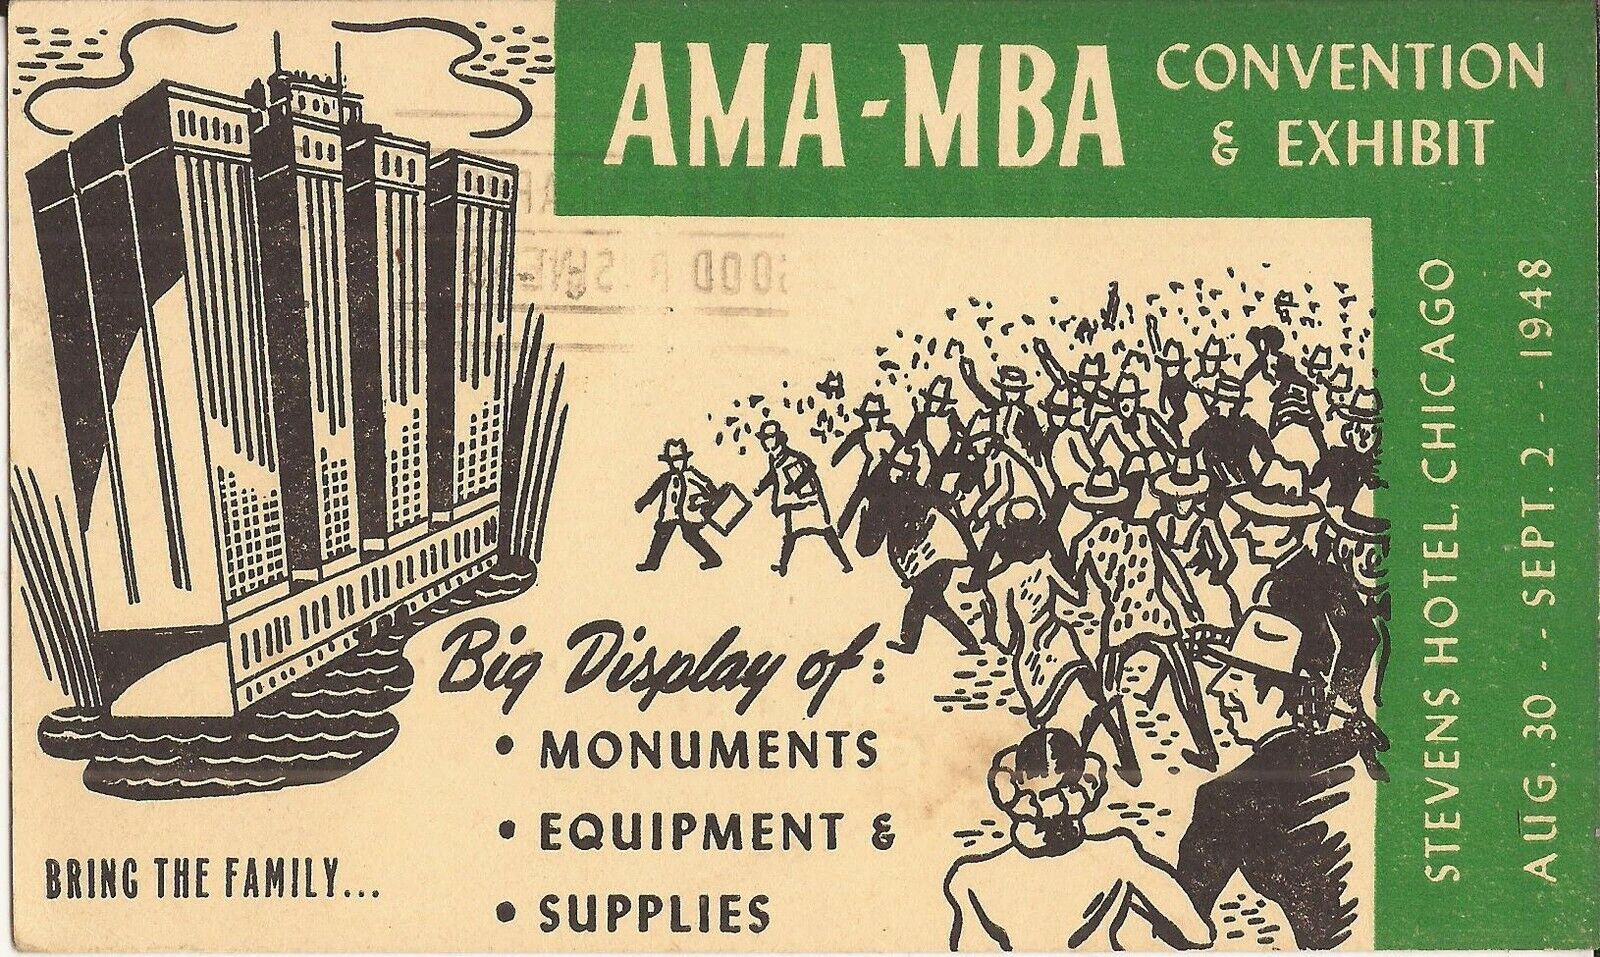 Chicago, ILLINOIS - AMA - MBA Convention & Exhibit - 1948